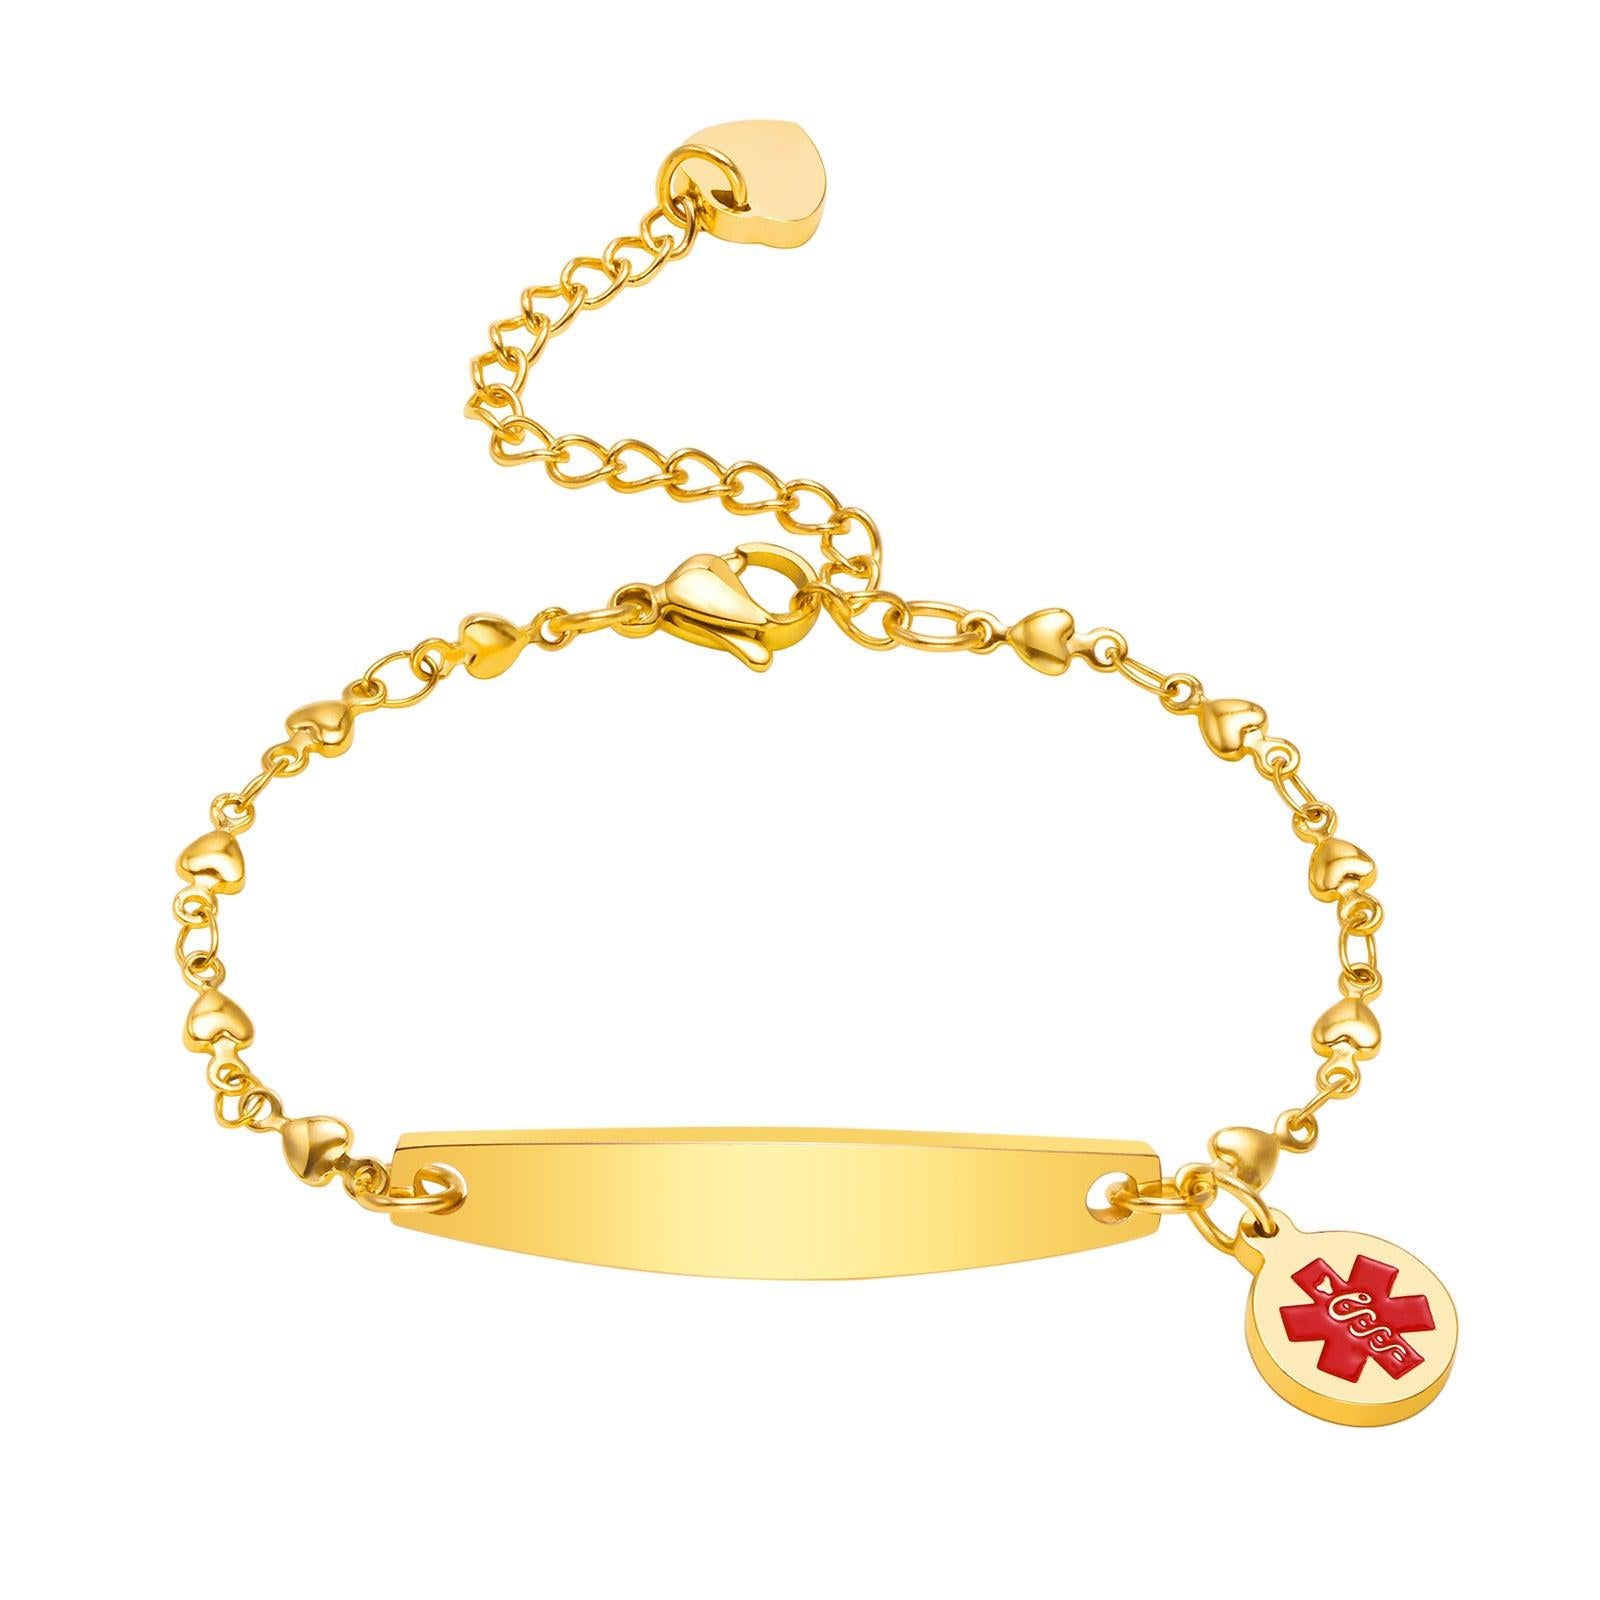 Personalised Medical Alert Heart Link Bracelet - Gold Colour-Medical ID Bracelet-Auswara